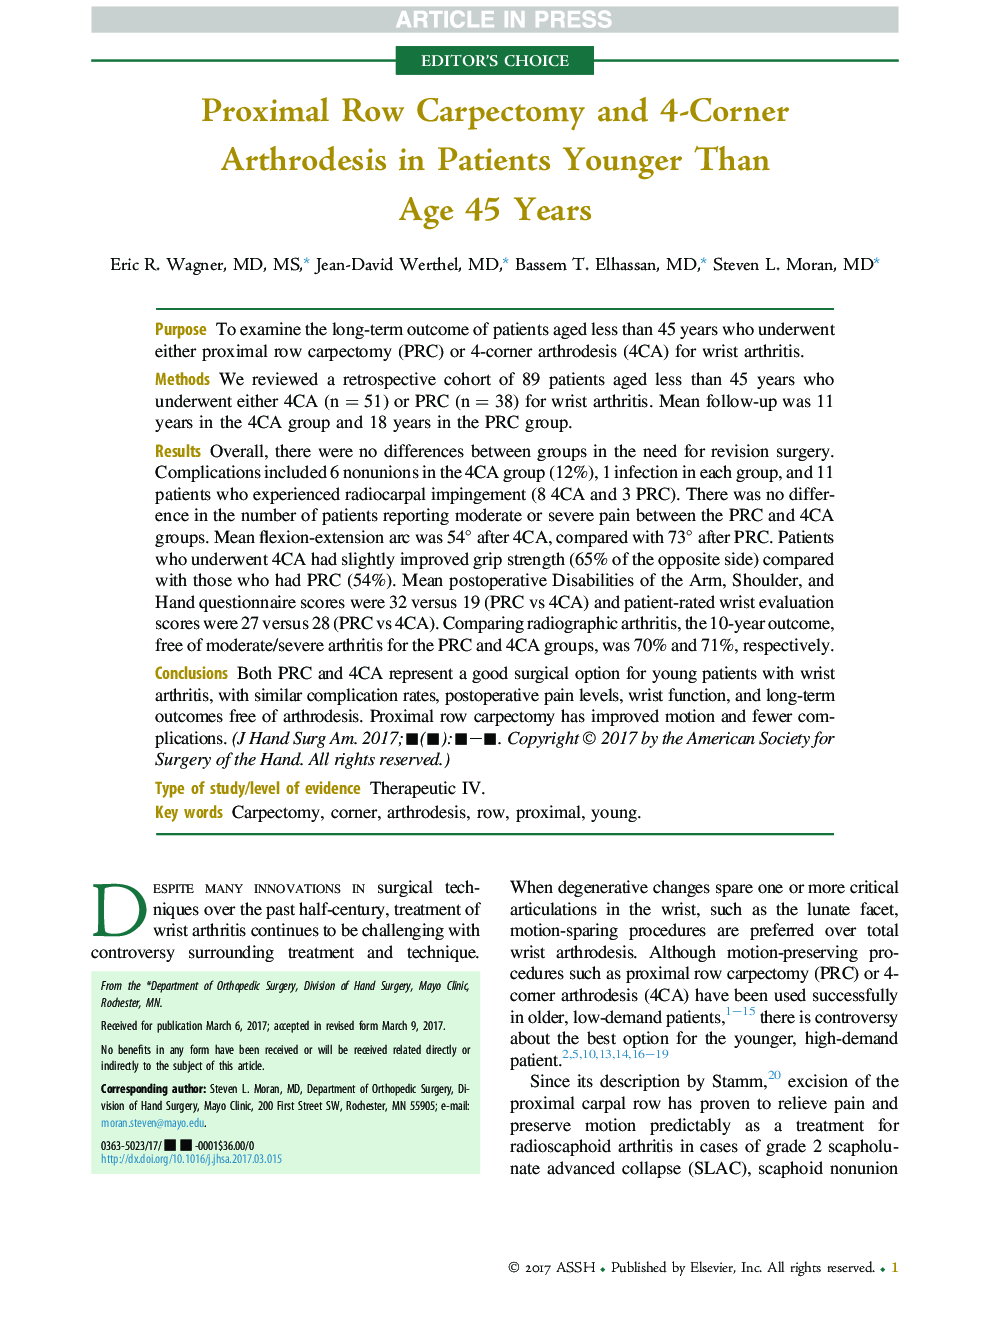 کاردکتومی رکوردی پروگزیمال و آرتروتز 4 گوشه در بیماران جوانتر از سن 45 سال 